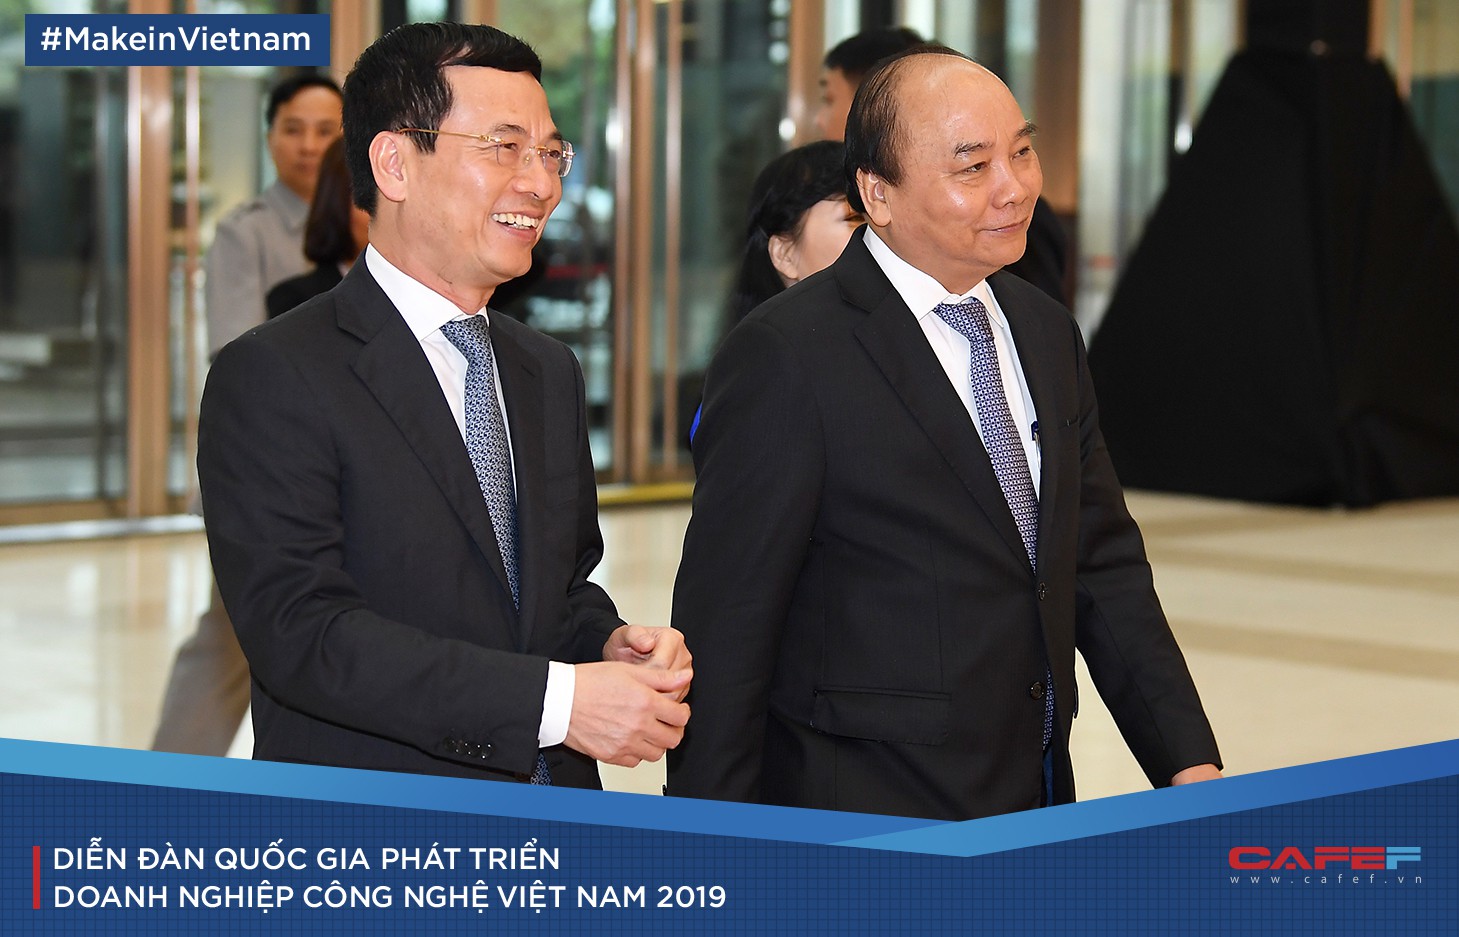 Góc nhìn lạ đằng sau “Make in Vietnam” của Bộ trưởng Nguyễn Mạnh Hùng - Ảnh 6.